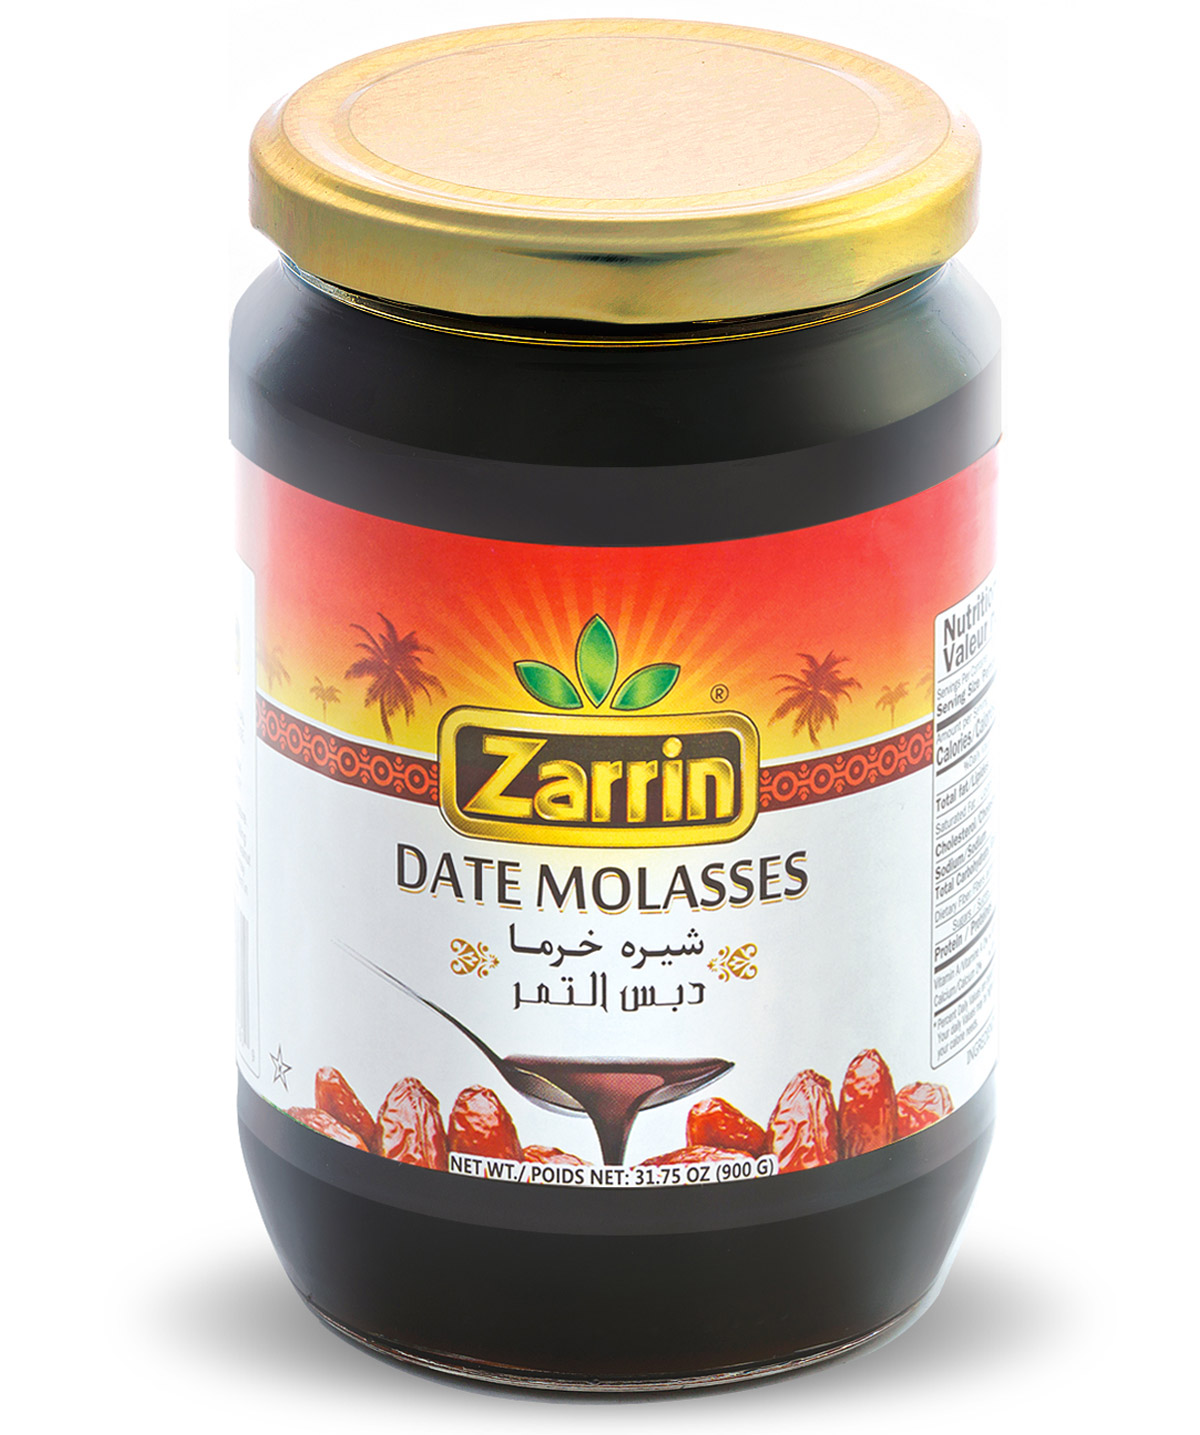 Zarrin Date Molasses